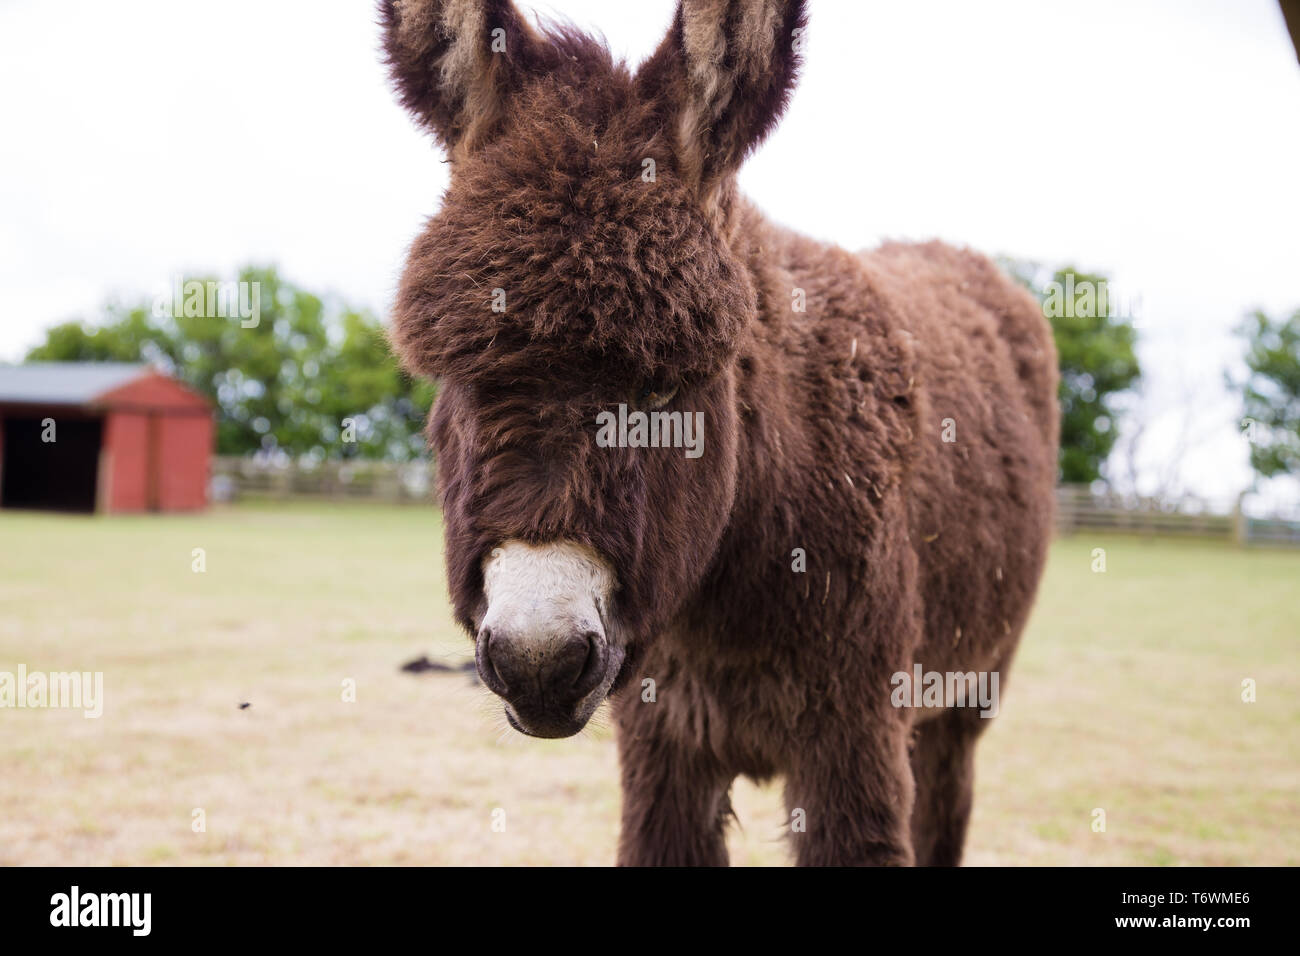 Norfolk Broads, Norfolk. UK A Donkey foal in a field. The Donkey has brown fluffy fur. Stock Photo